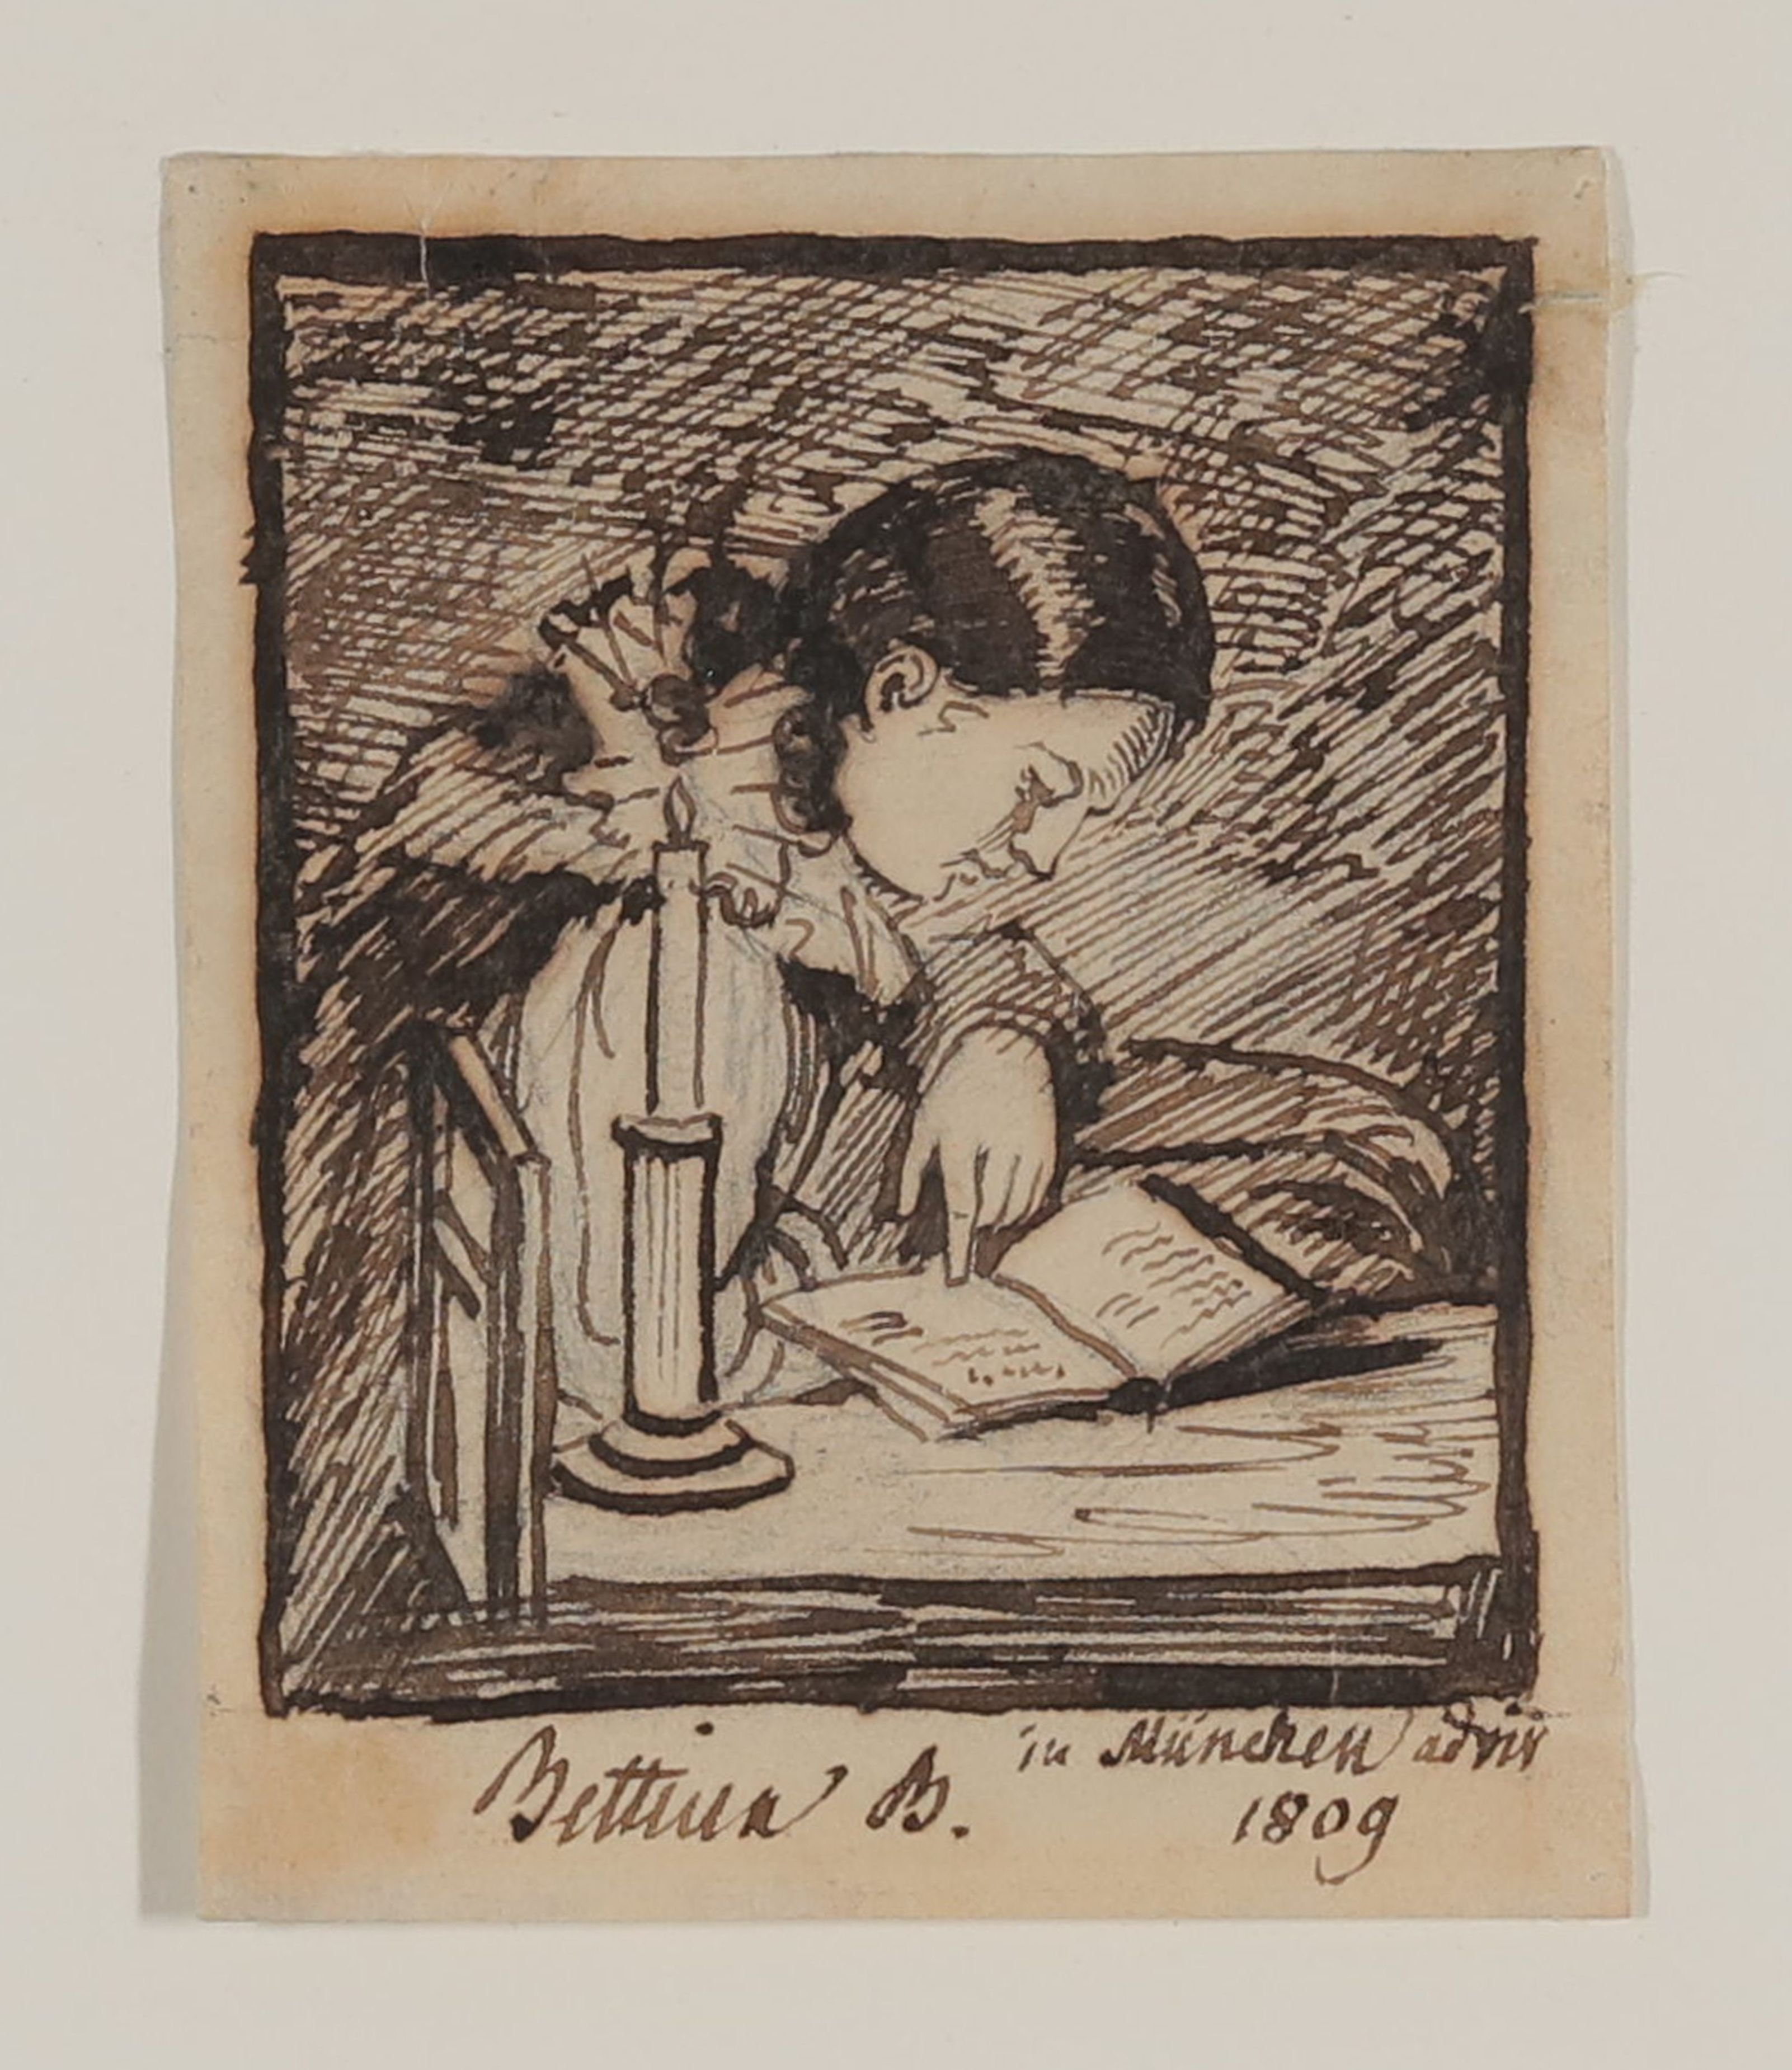 Bettine Brentano, spätere von Arnim, bei Kerzenlicht lesend (Freies Deutsches Hochstift CC BY-NC-SA)